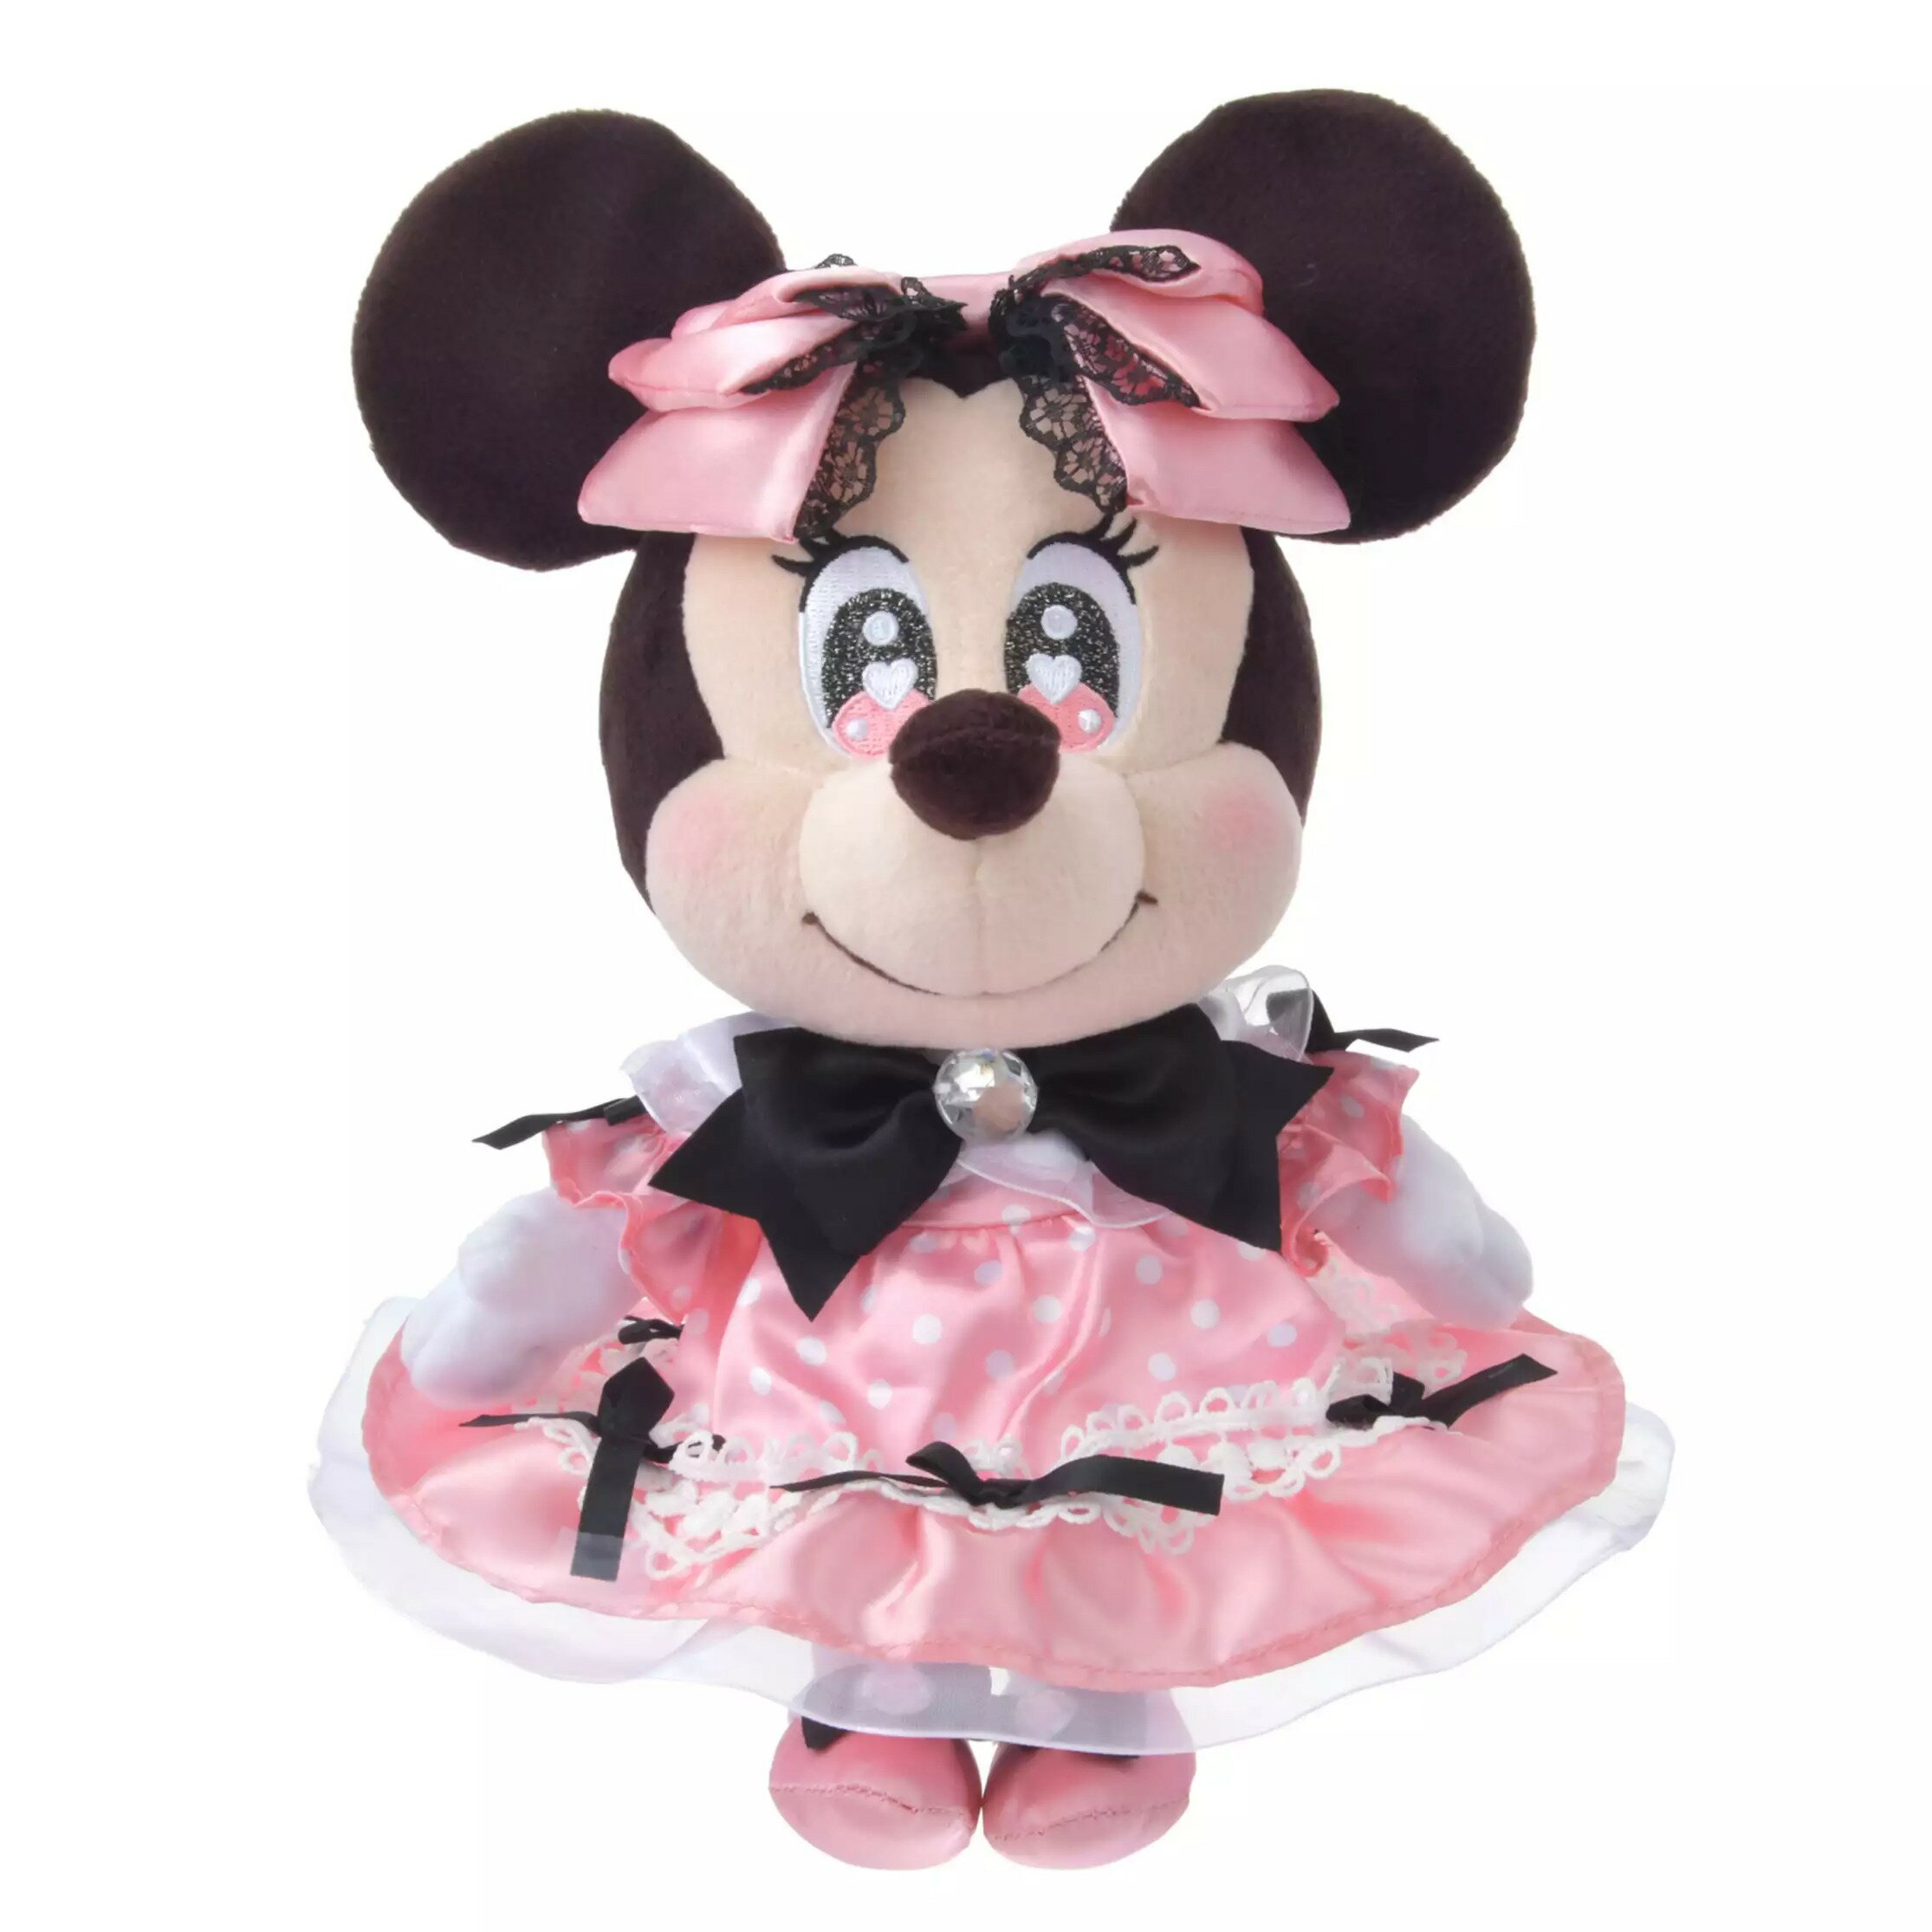 真愛日本 迪士尼 米妮 歌德蘿莉塔 造型絨毛玩偶 玩偶 娃娃 布偶 絨毛娃娃 收藏 擺飾 迪士尼專賣店限定